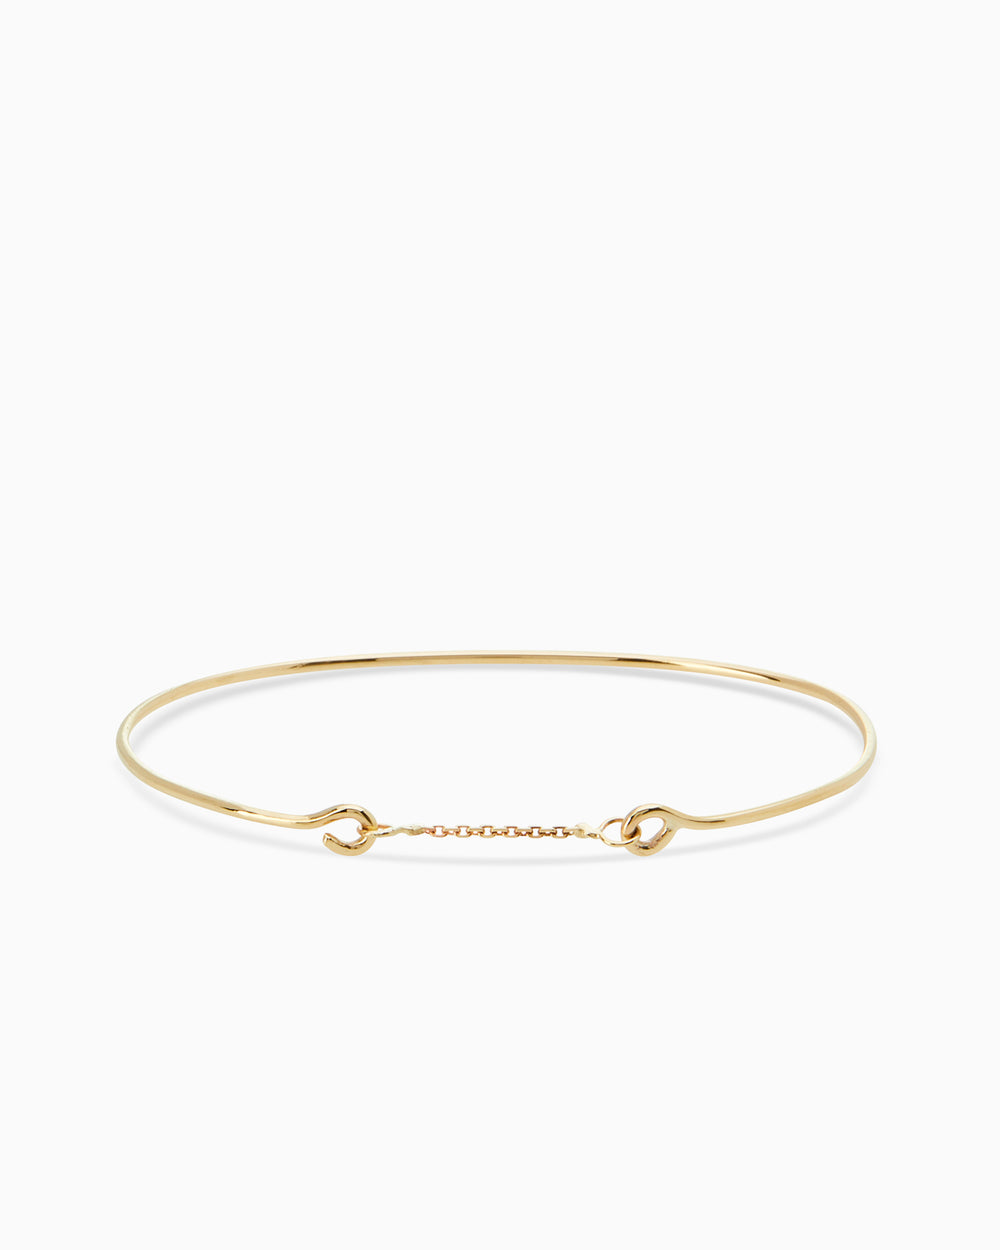 Resin Weave Bracelet | Solid Gold